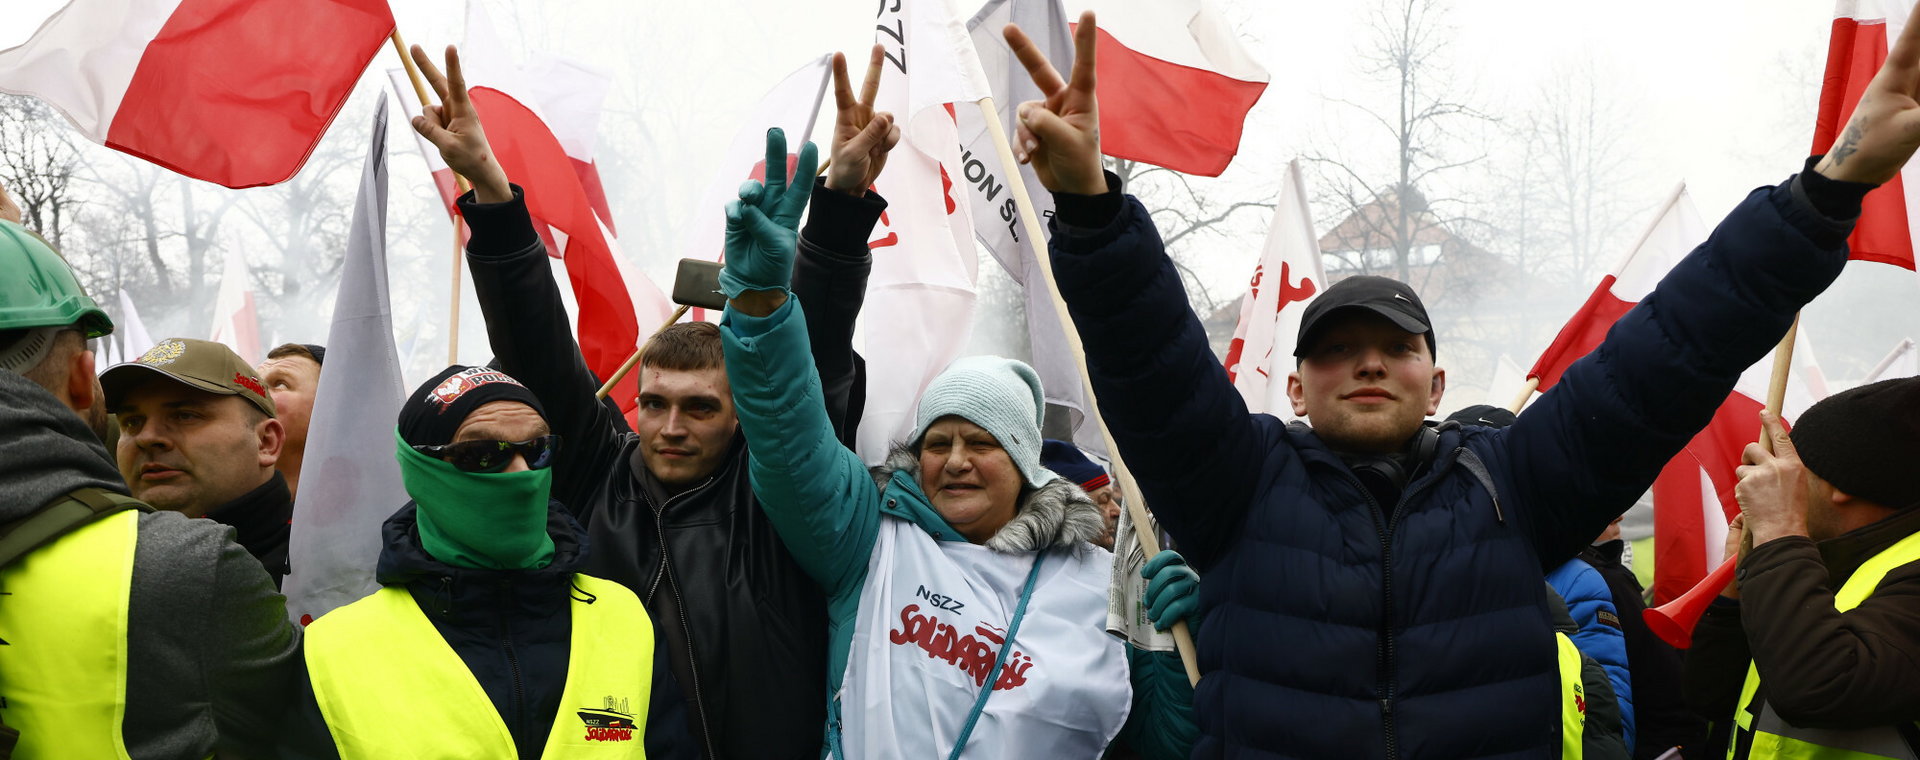 Rolnicy protestowali przeciw Zielonemu Ładowi w Warszawie. Za miesiąc część z nich musi zapłacić nowy podatek